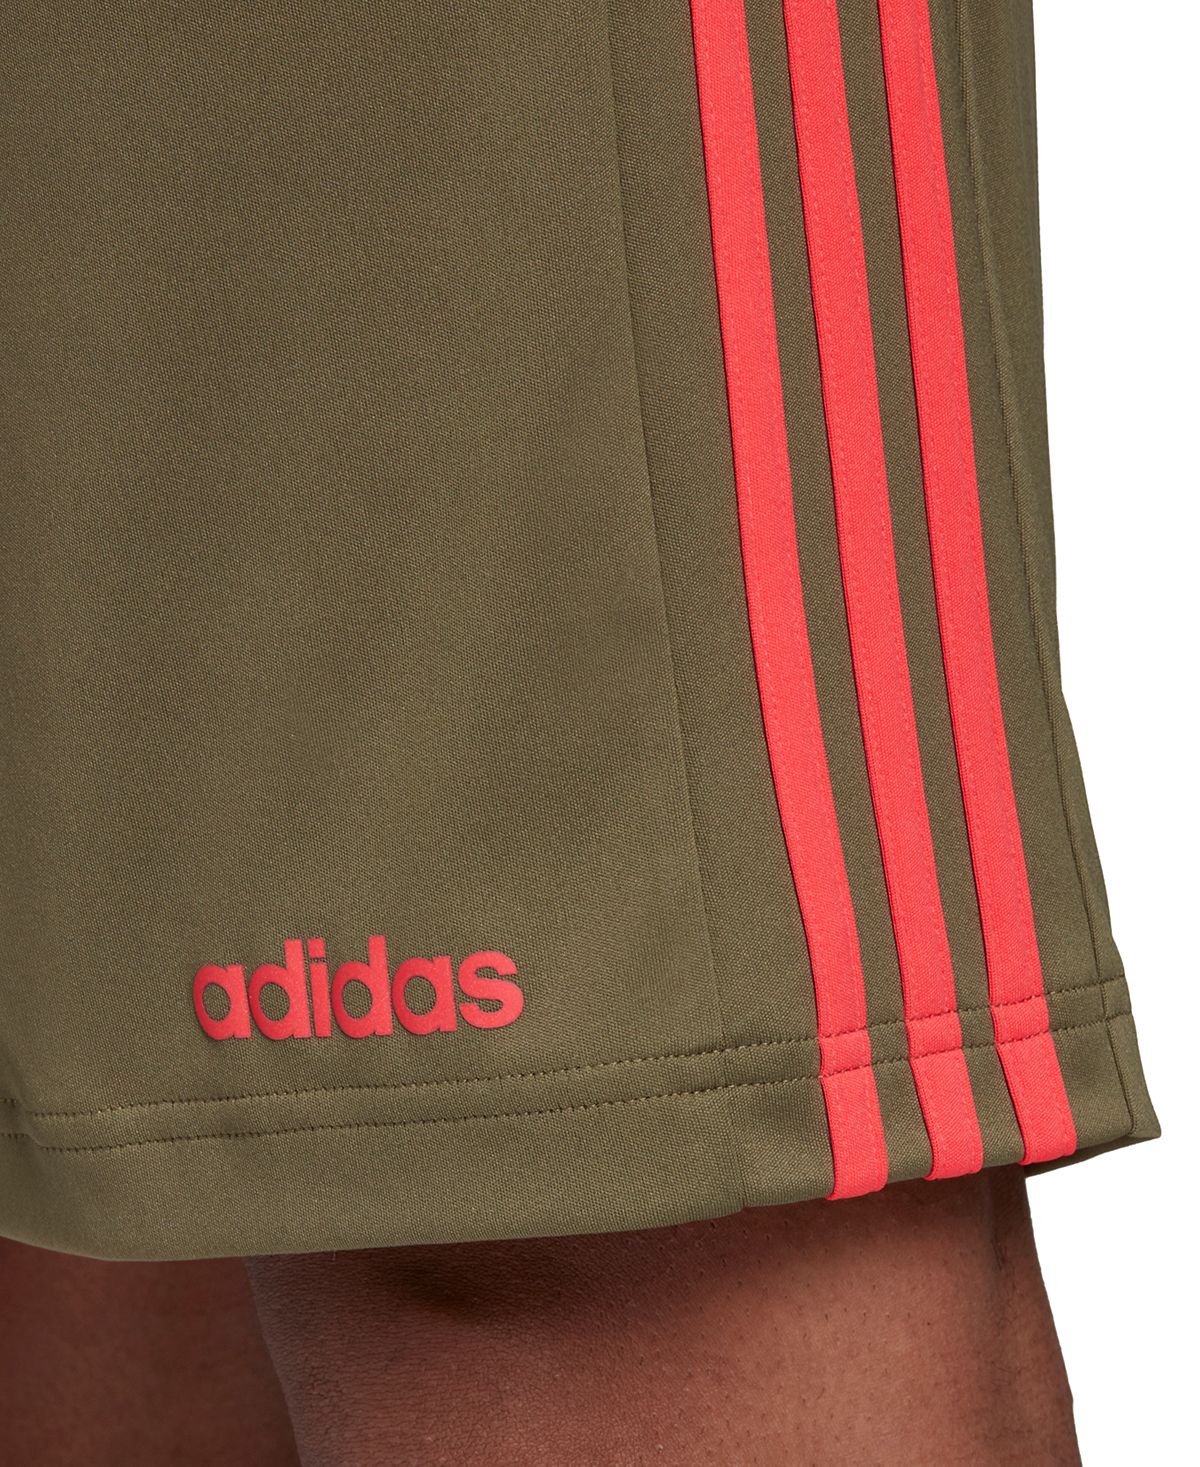 Adidas Designed 2 Move Climacooltraining Shorts Raw Khaki/red